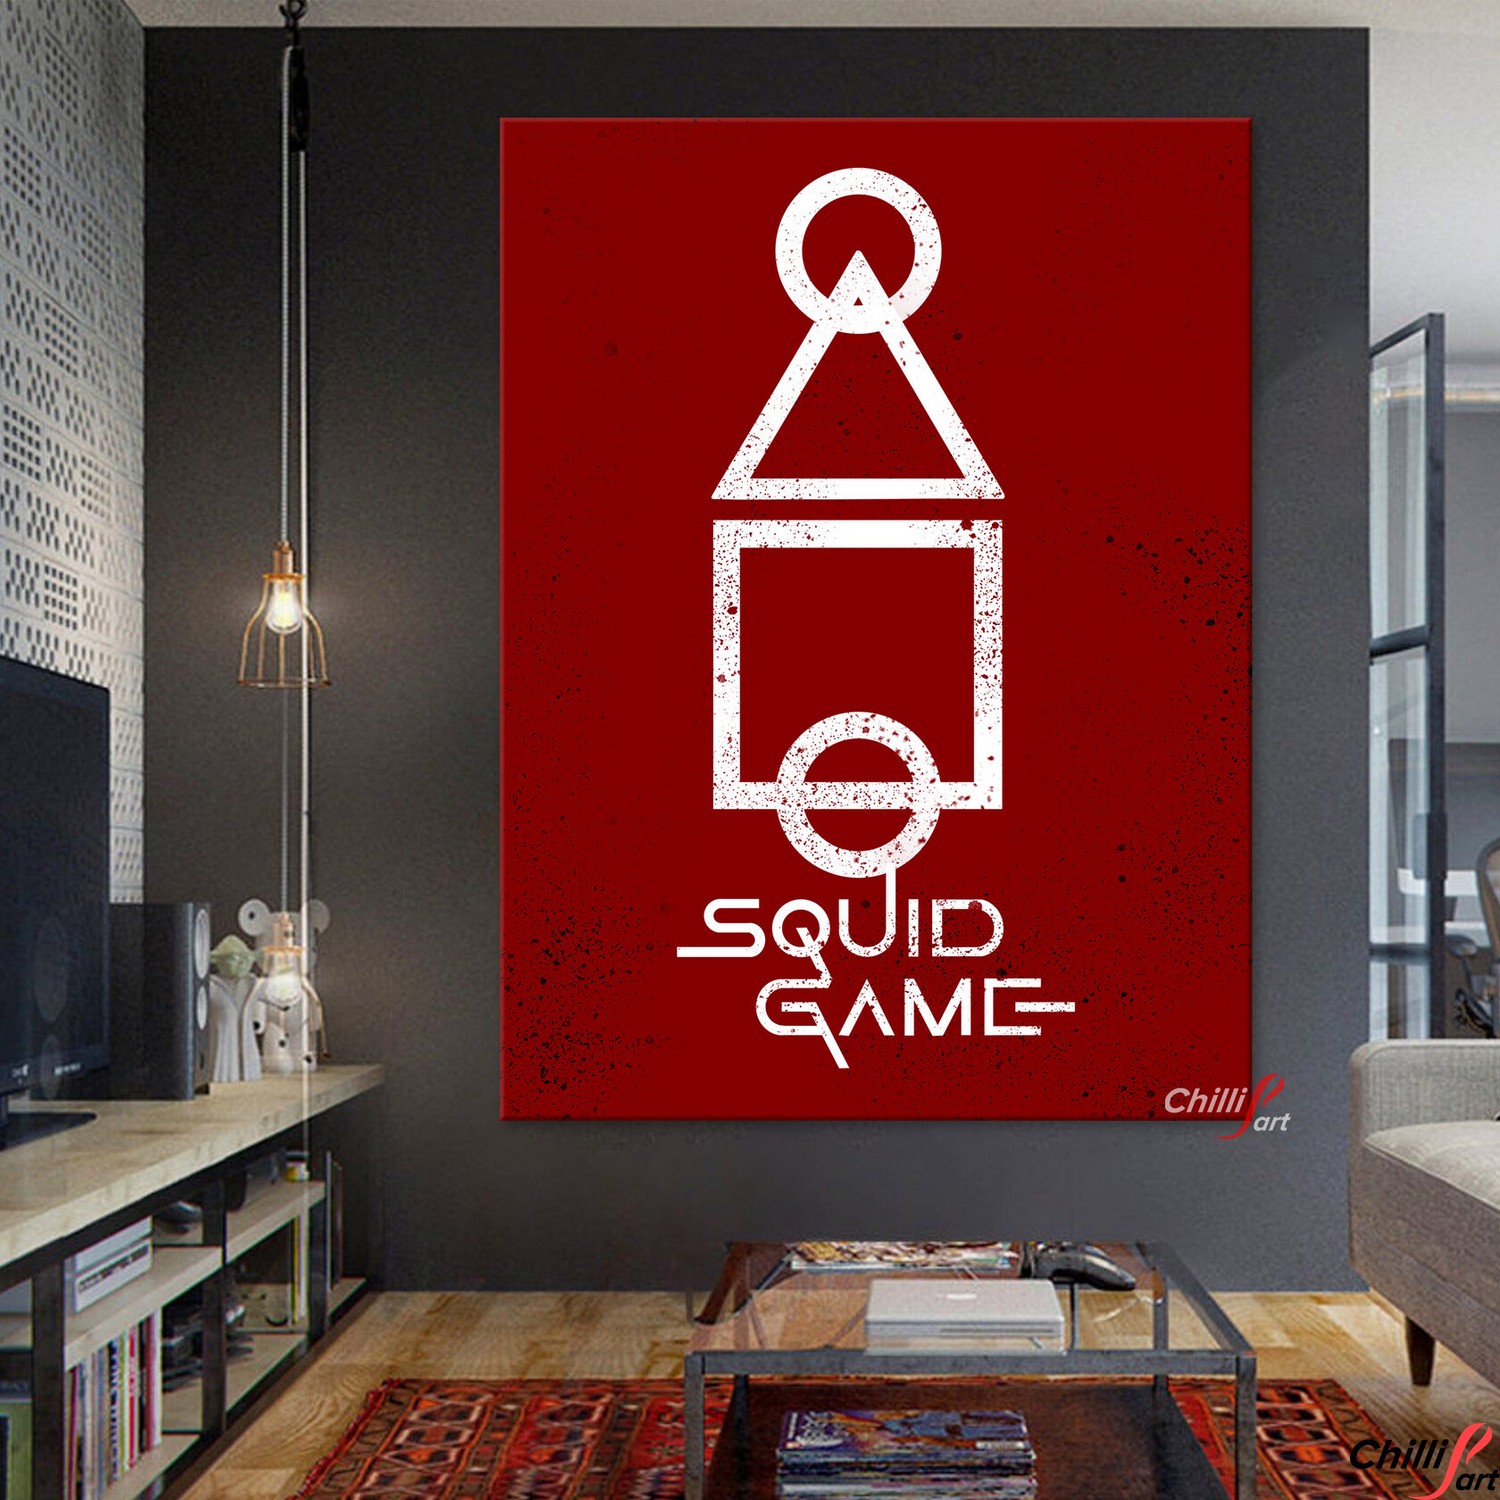 Картина Squid game logo